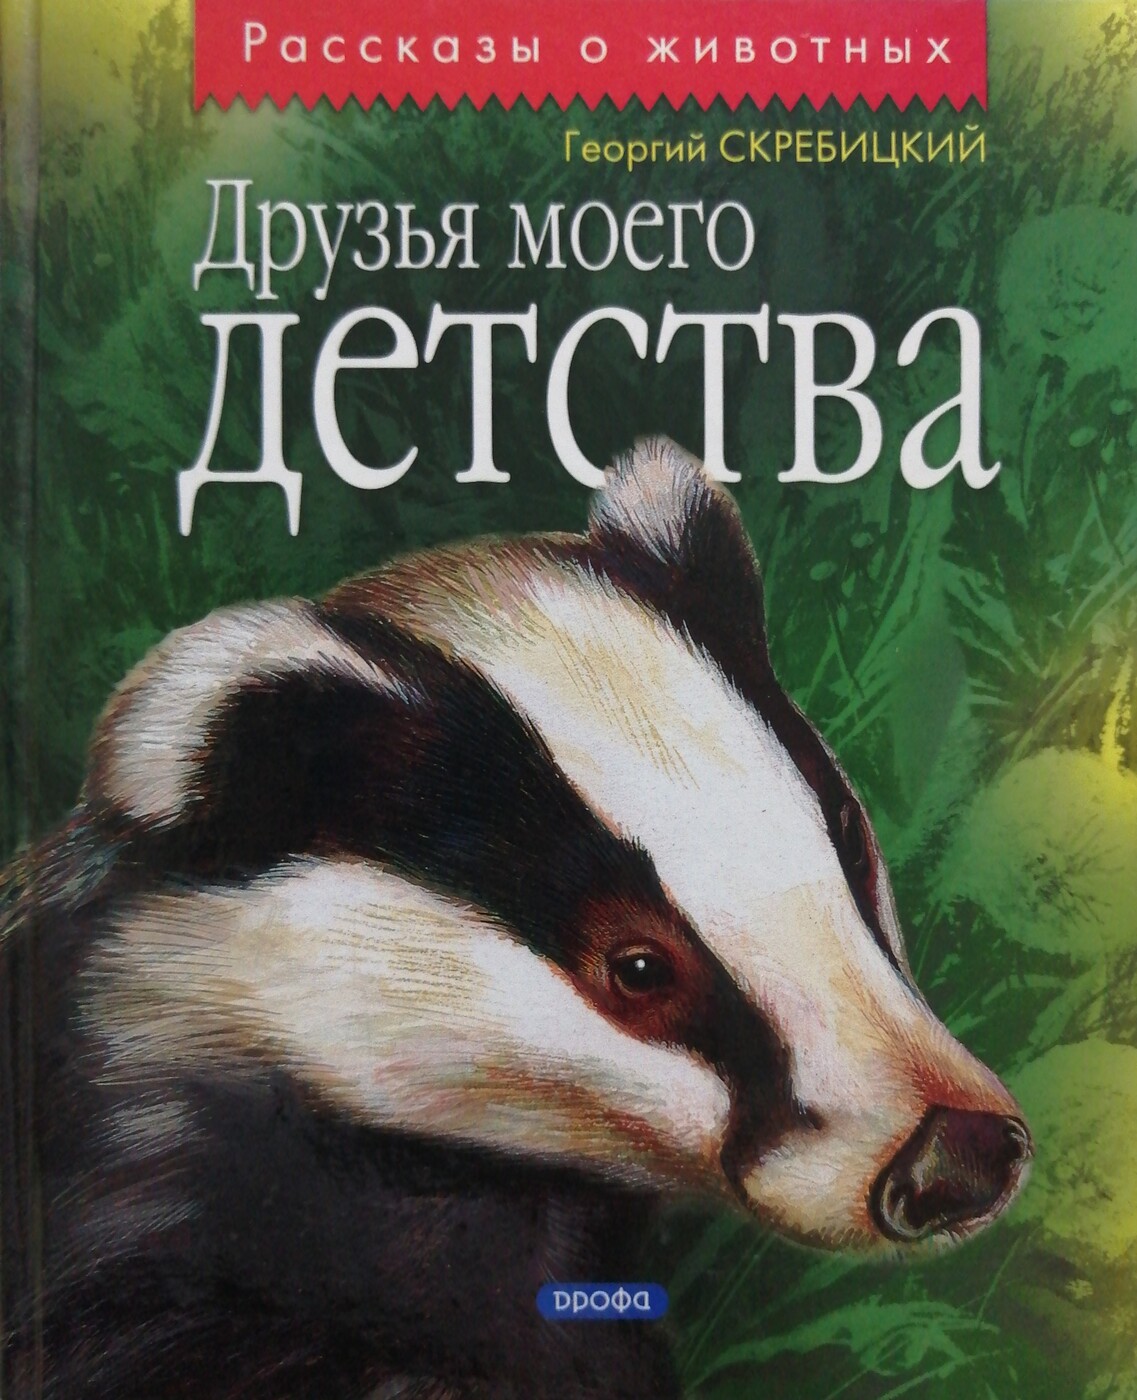 Скребицкий друзья моего детства книга. Книги Георгия Скребицкого.